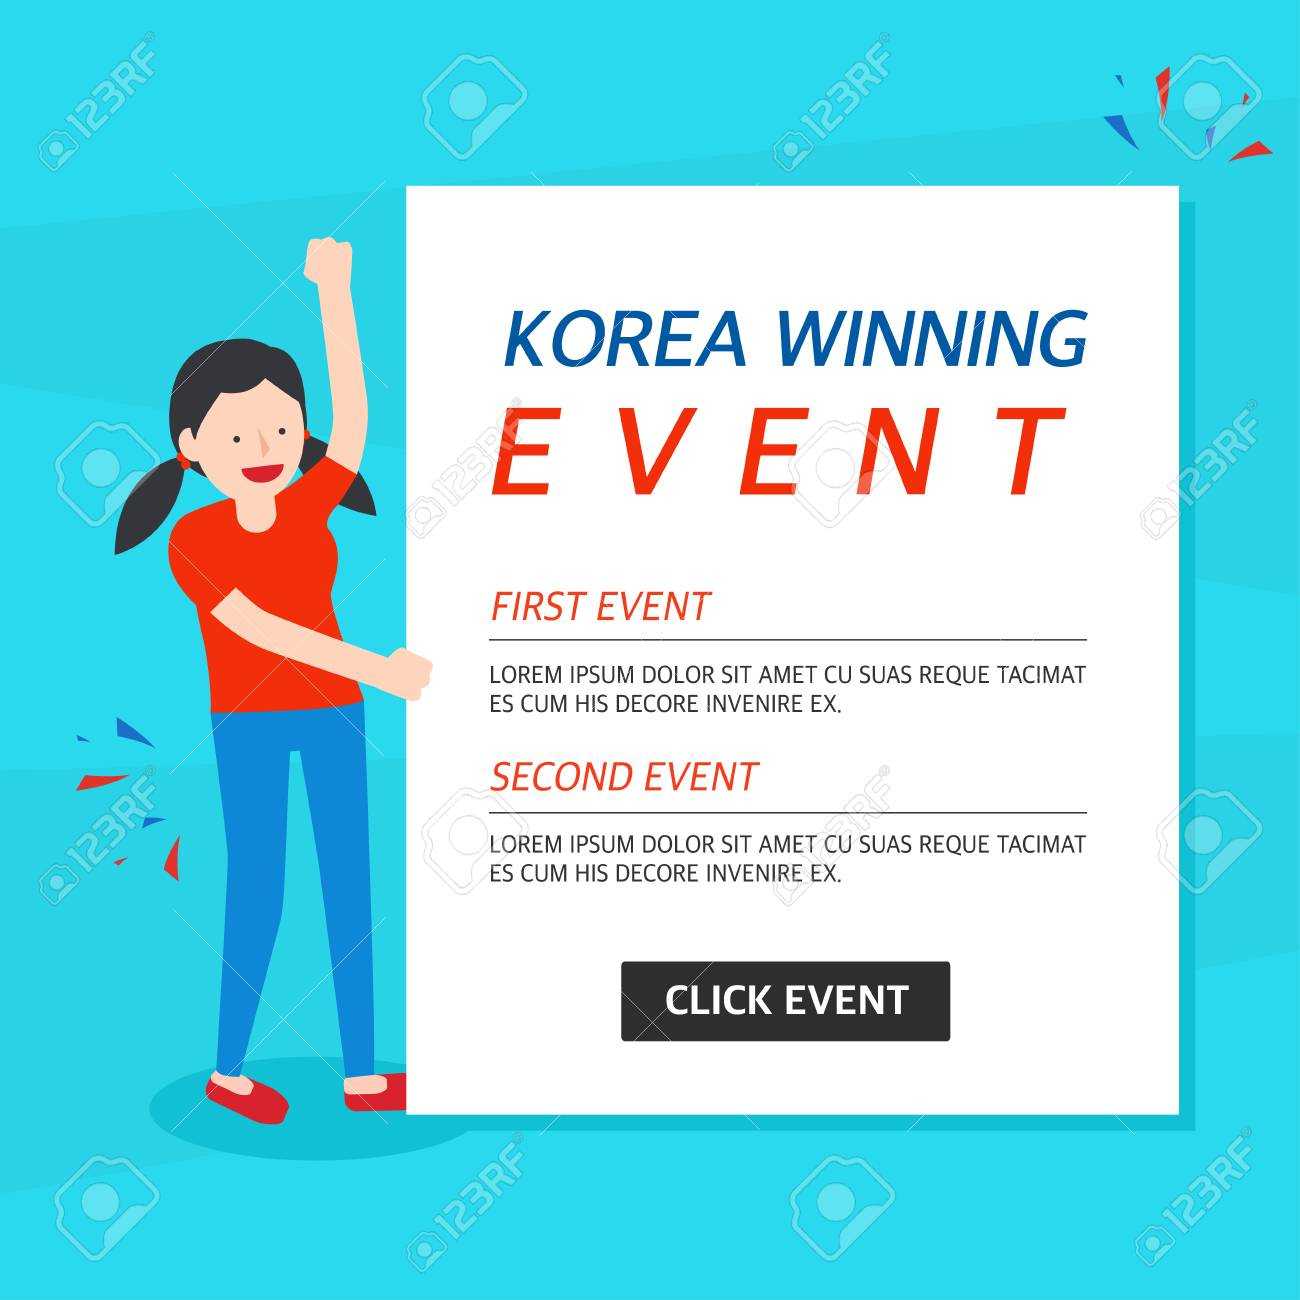 Korea Winning Event Banner Template Throughout Event Banner Template